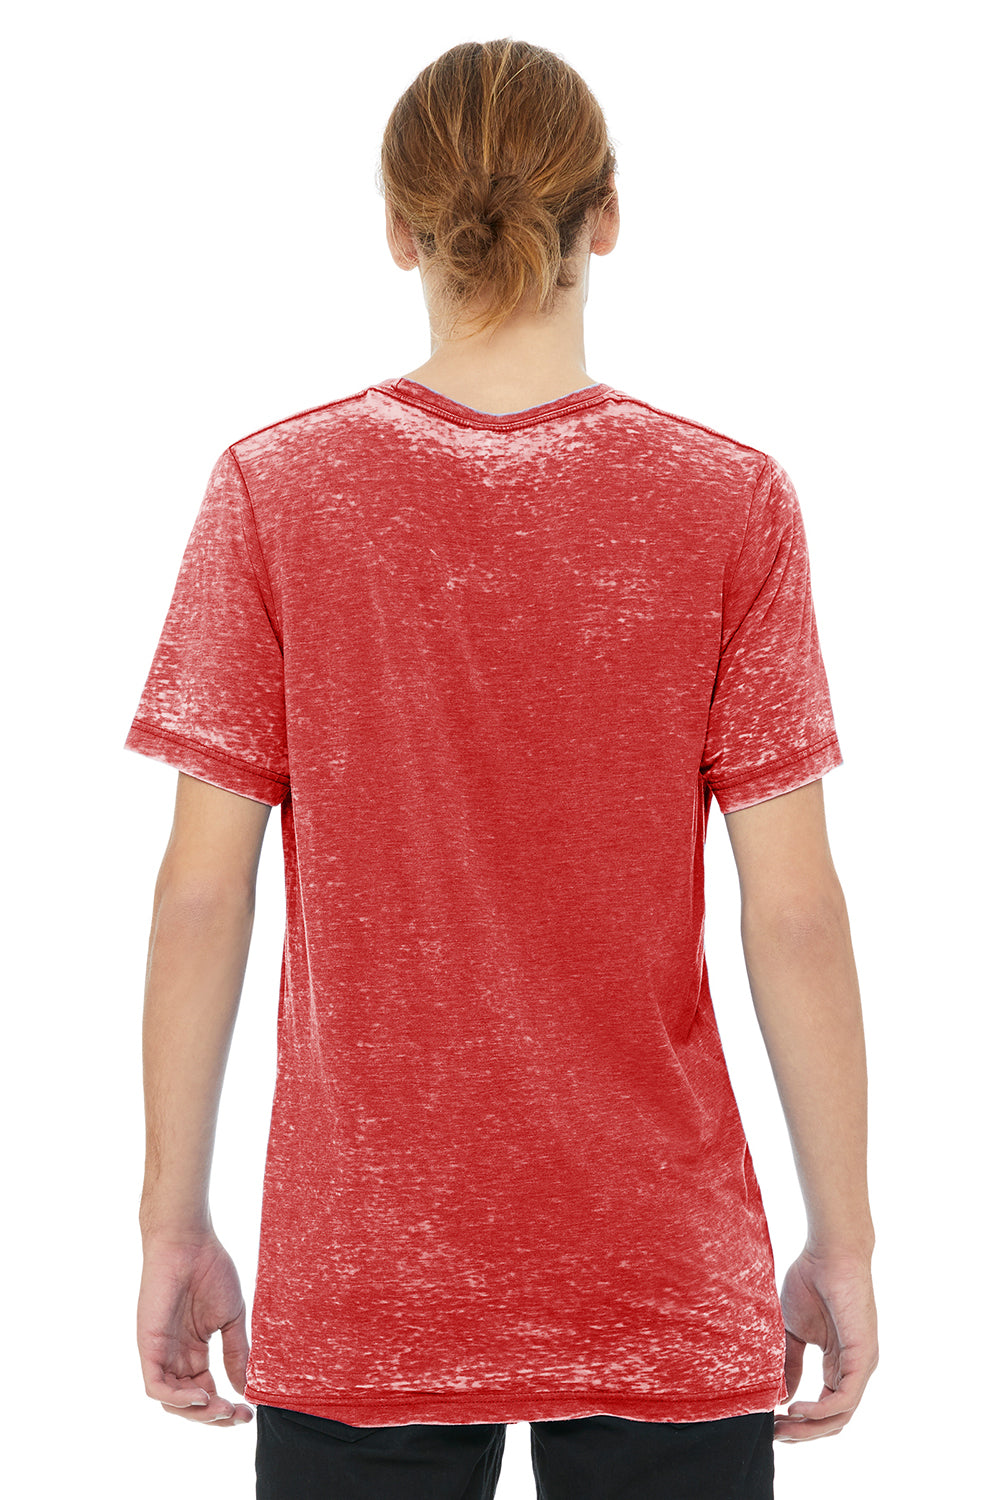 Bella + Canvas 3650 Mens Short Sleeve Crewneck T-Shirt Red Acid Washed Back